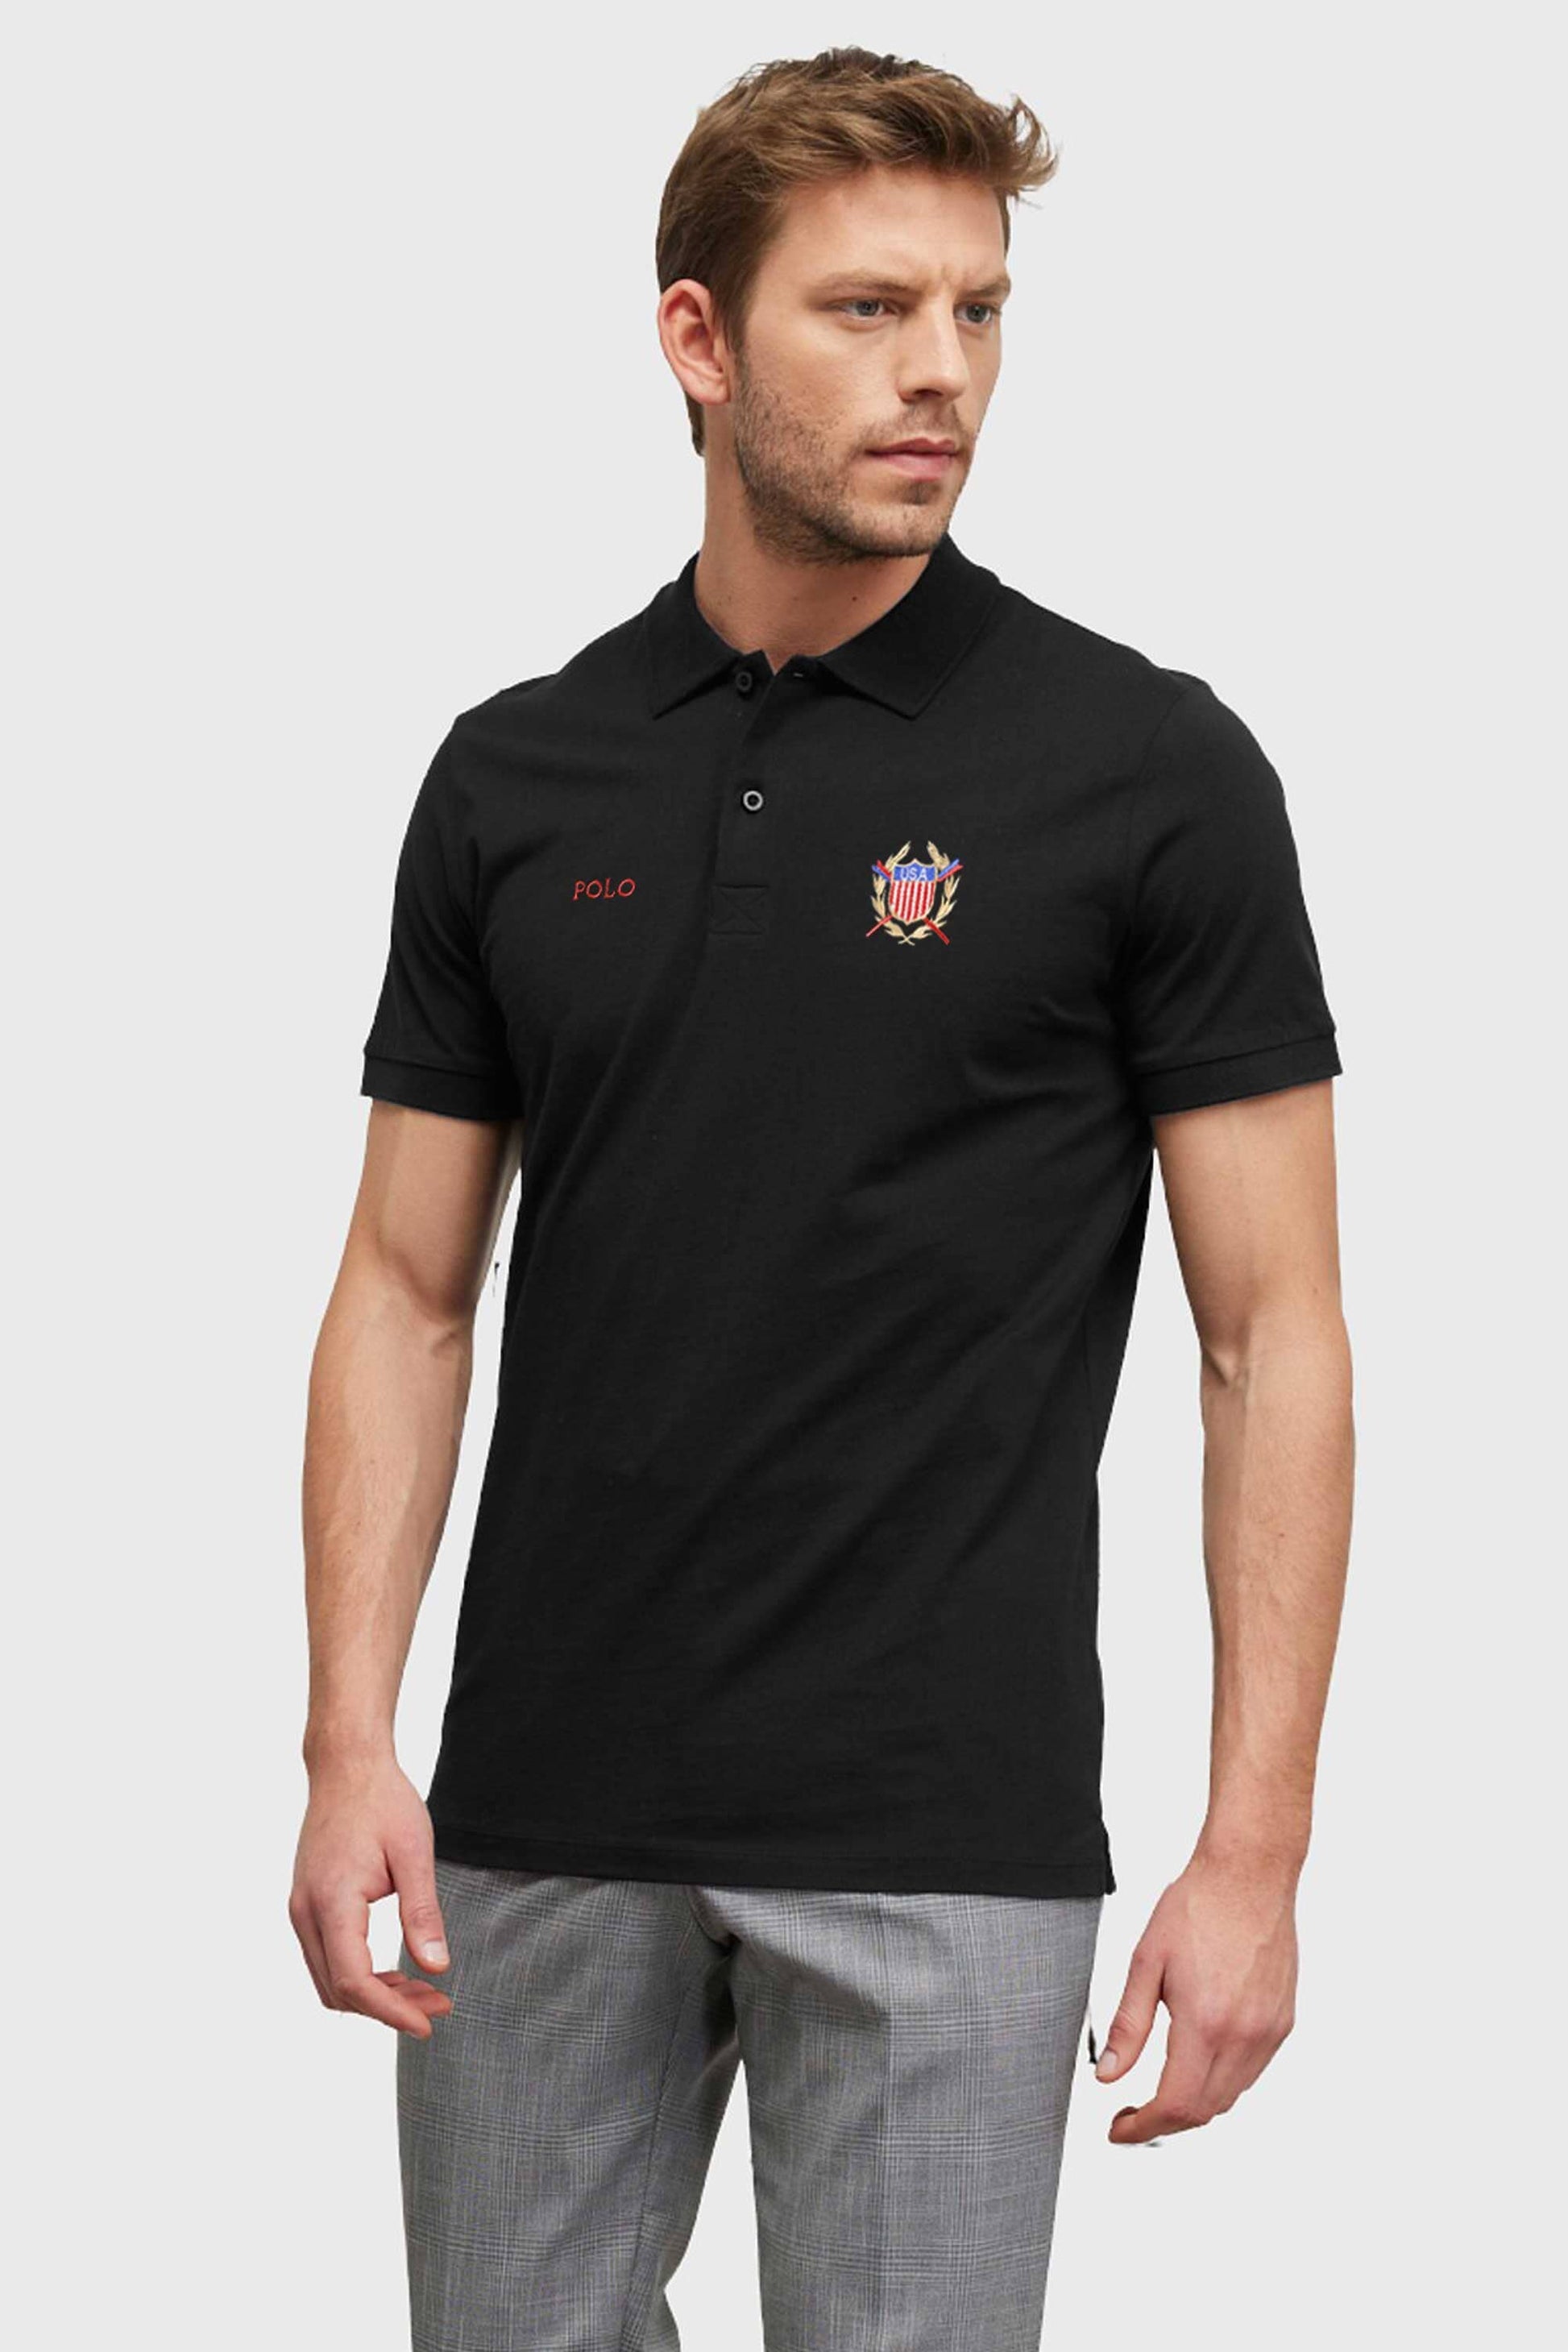 Polo Republica Men's USA & Polo Embroidered Short Sleeve Polo Shirt